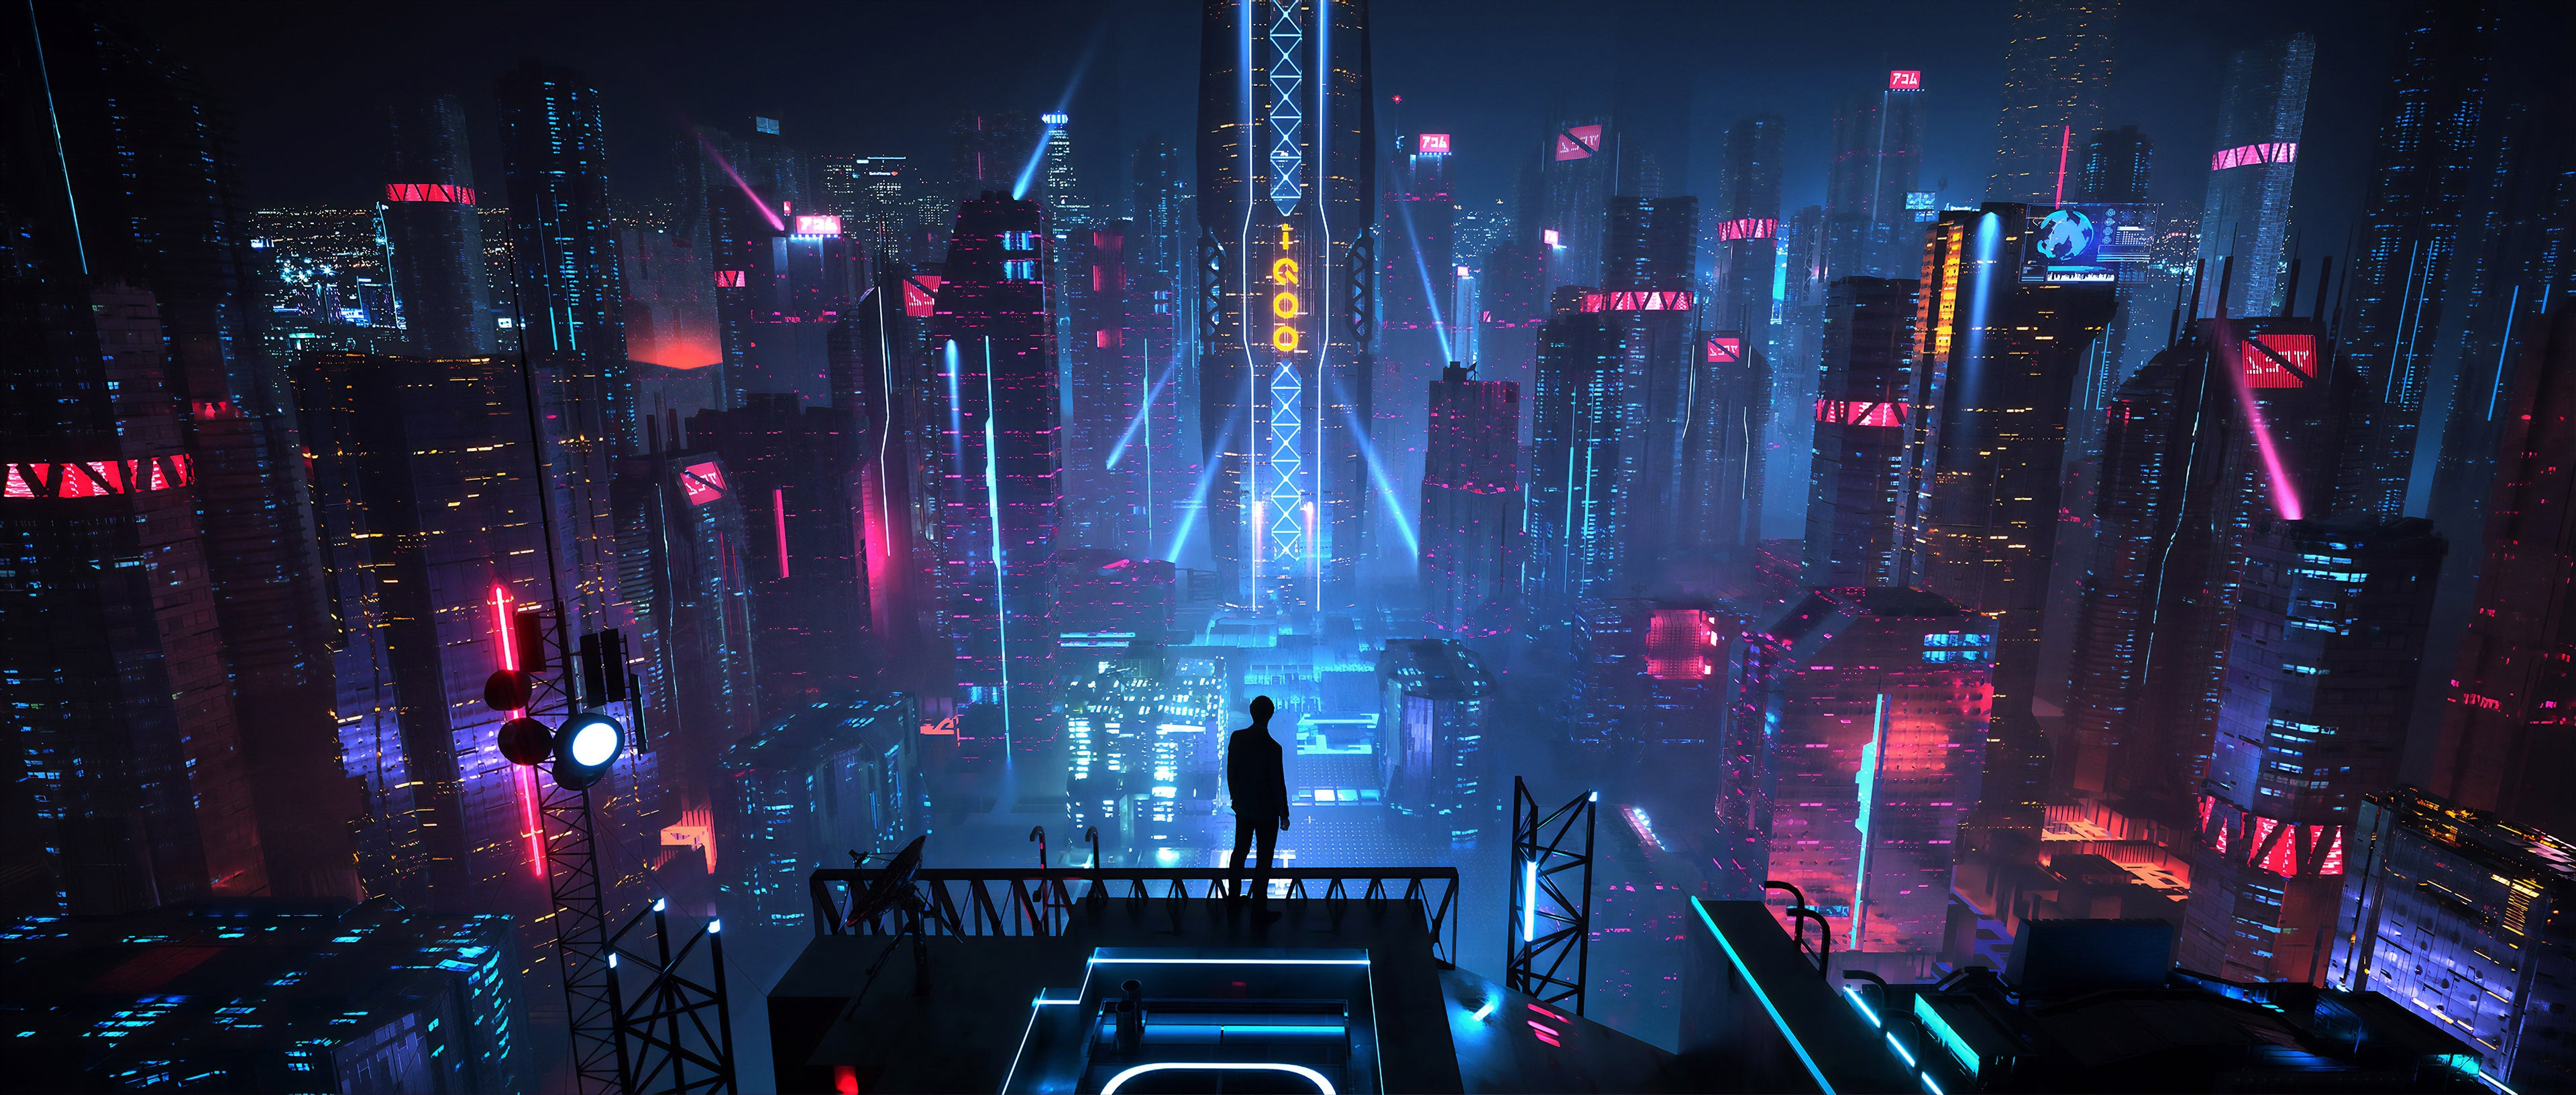 Cyberpunk City Wallpaper: Những bức ảnh nền về thành phố cyberpunk sẽ khiến bạn mê mẩn với độ chi tiết chân thực. Bạn muốn thăm thú những ngôi nhà đầy công nghệ, những con phố đầy nhộn nhịp? Đừng bỏ lỡ những hình nền này độc đáo!